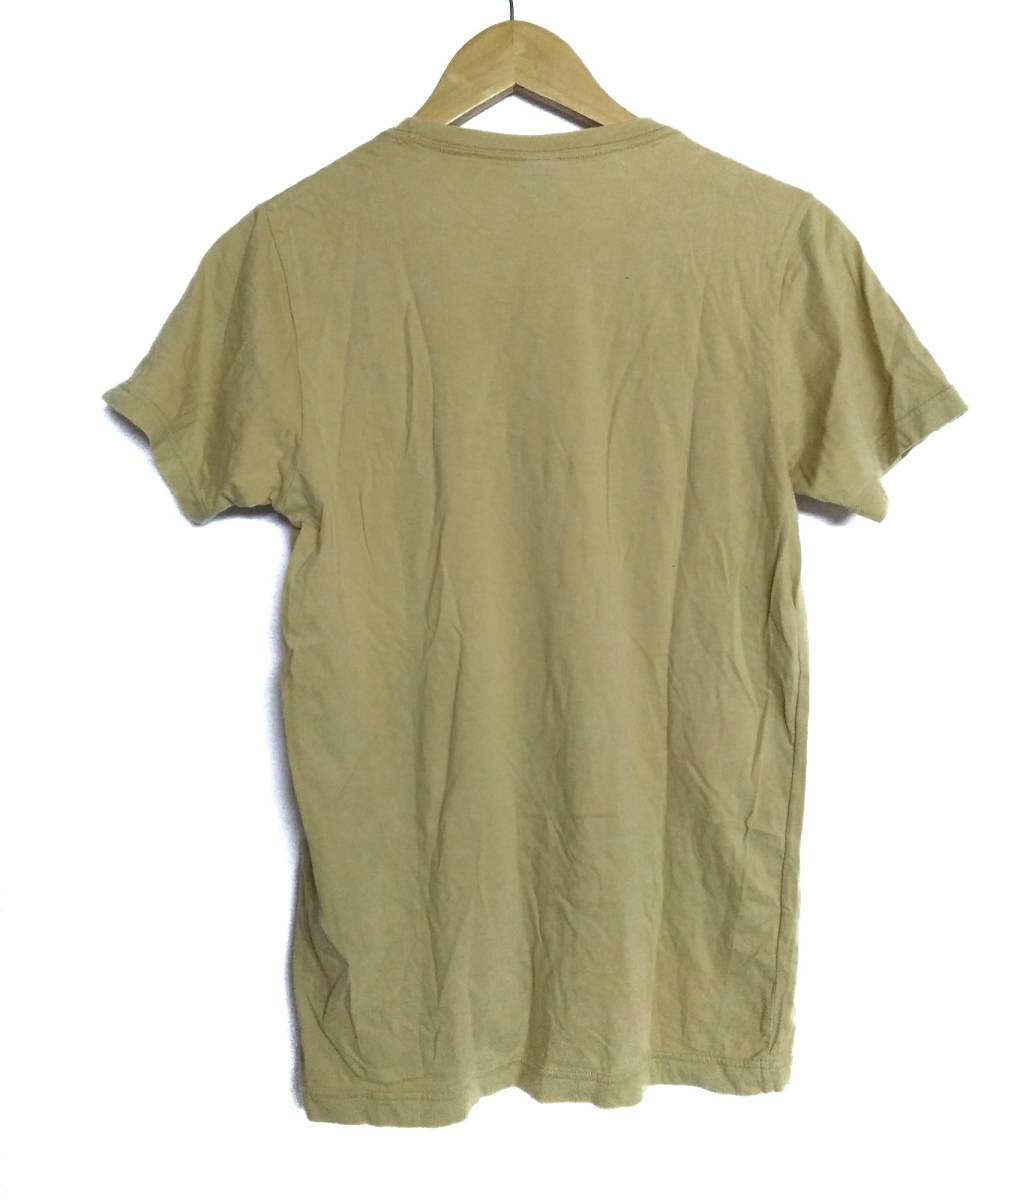 プレッジ Pledge ジョンレノン ベージュ 48サイズ Tシャツ さくらんぼ メンズ シャツ ナンバーナイン TMT JOHNLENNON